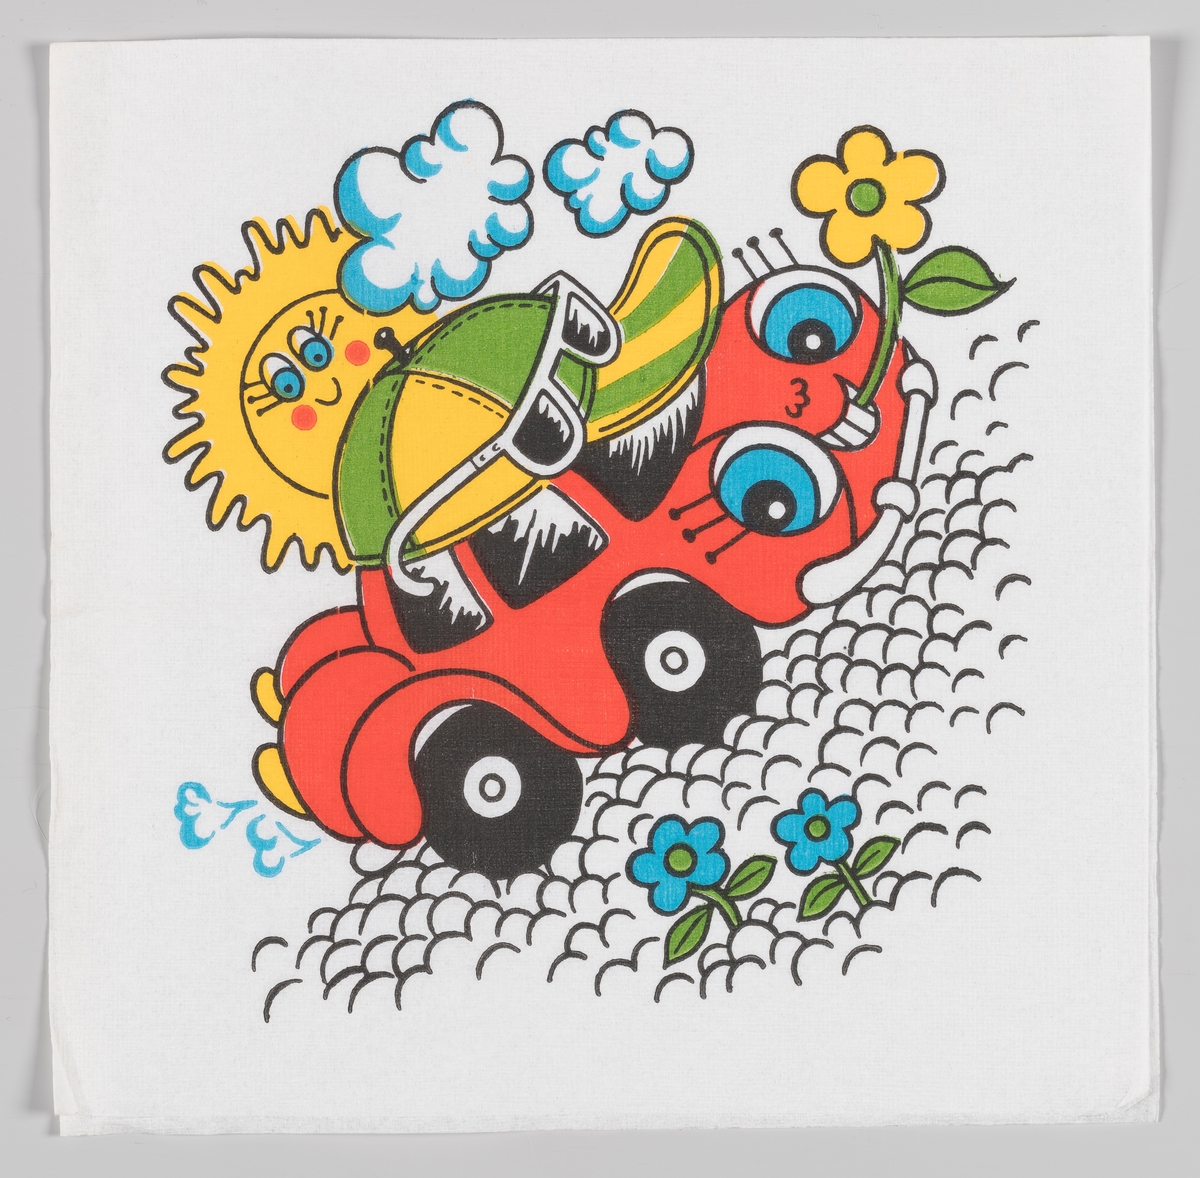 En smilende rød bil med caps og solbriller holder en blomst mellom tennene sine. Bilen kjører på en steinete vei og en smilende sol ses bak 
skyene.

Samme motiv som på serviett MIA.00007-003-0066.